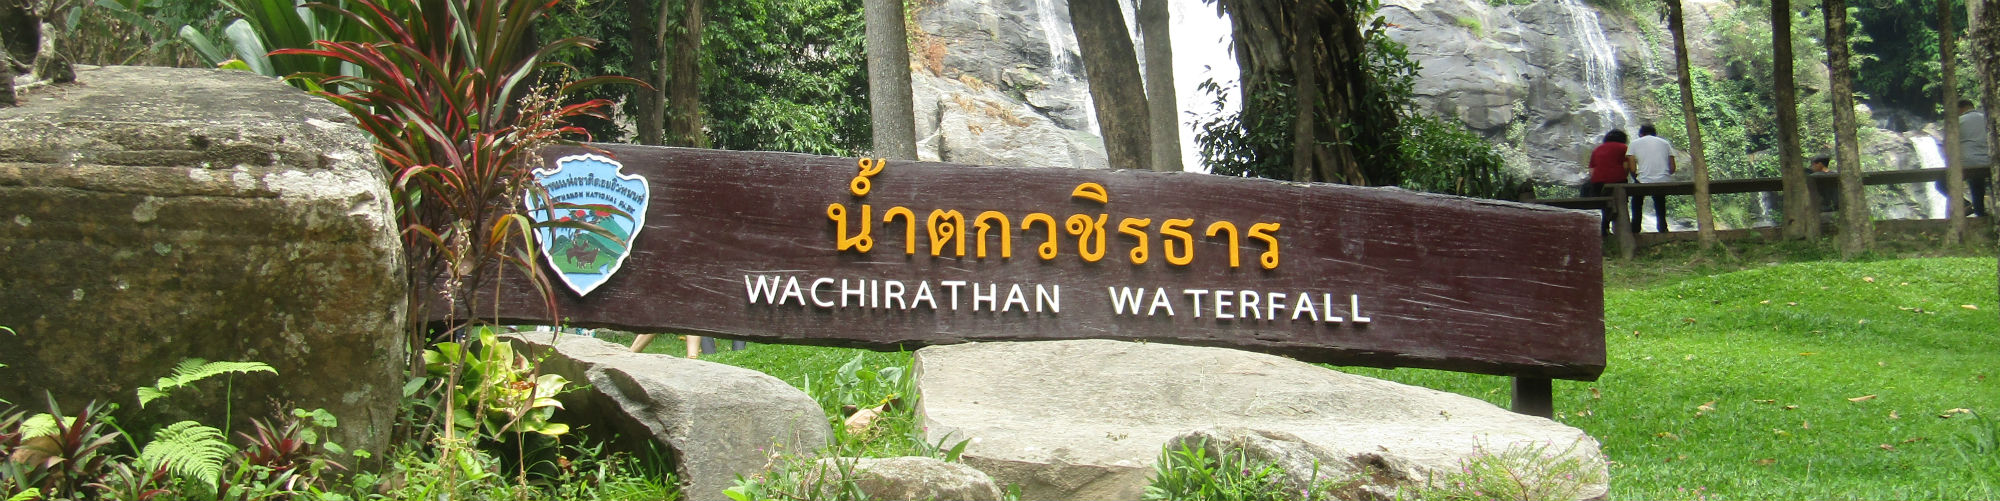 Wachirathan Waterfall, Doi Inthanon National Park, Chiang Mai Province